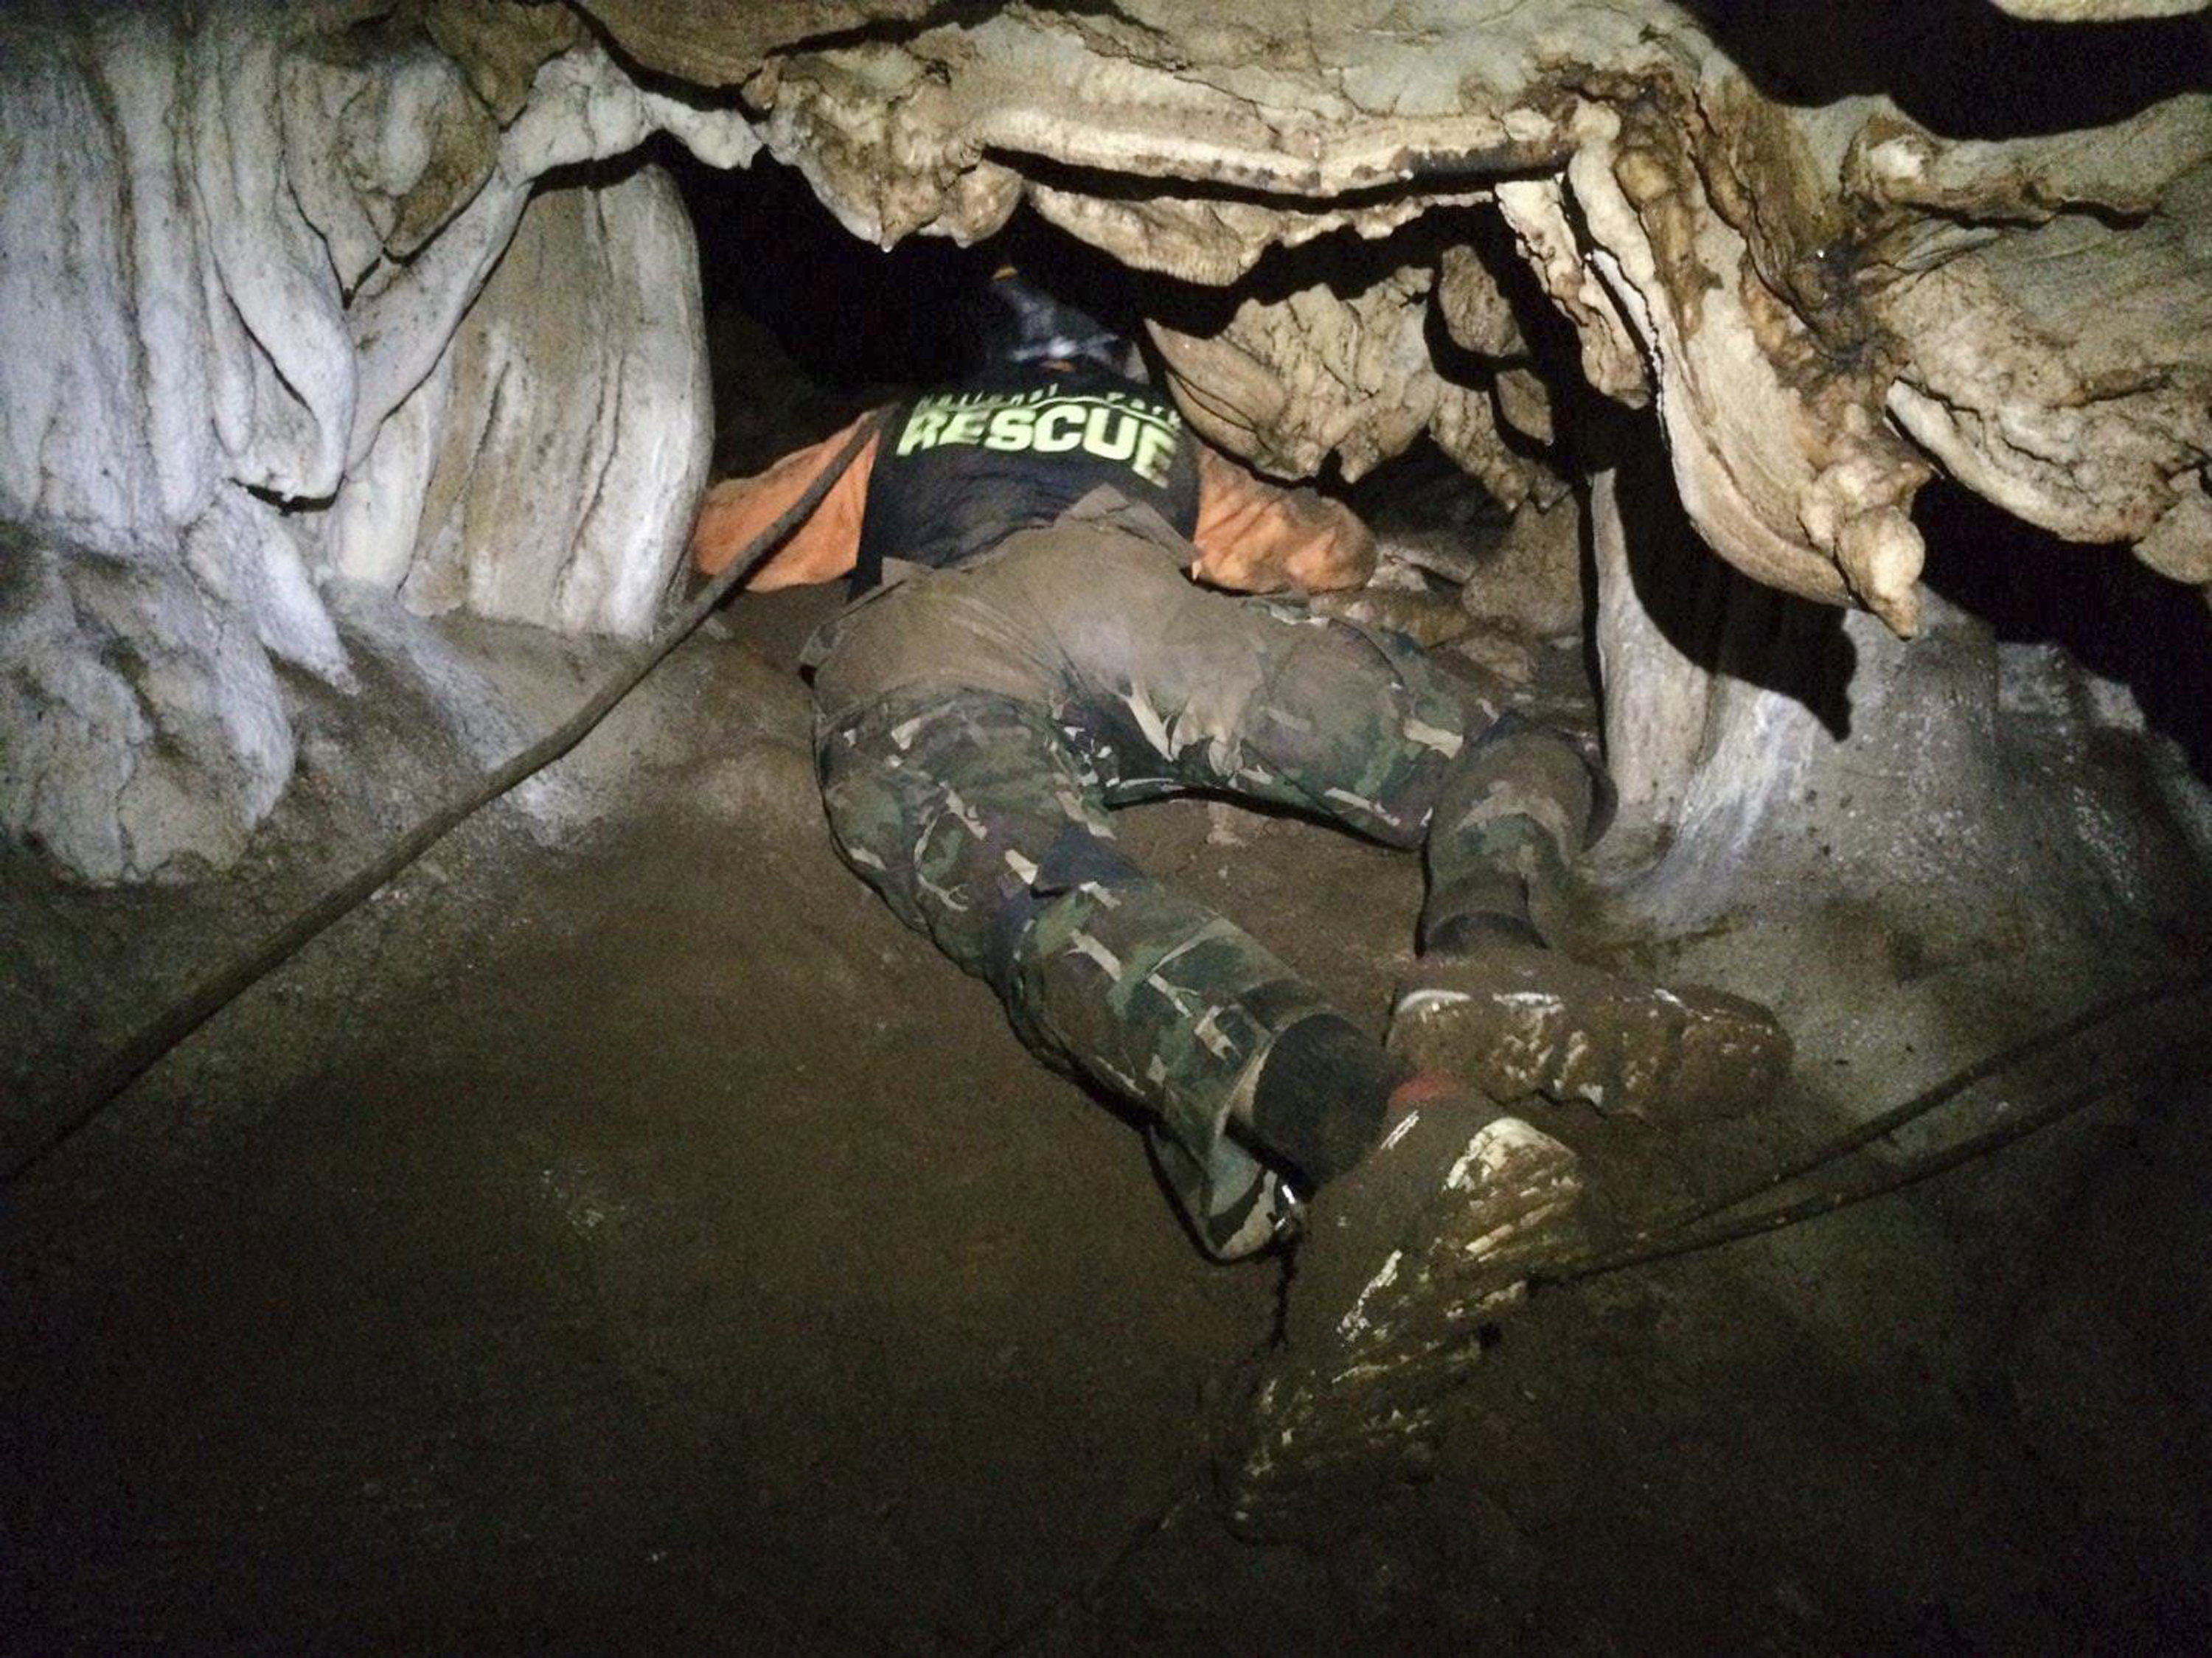 Las labores de rescate fueron muy complicadas por túneles estrechos y sitios inundados de agua (Thailand Department of National Parks and Wildlife vía AP)